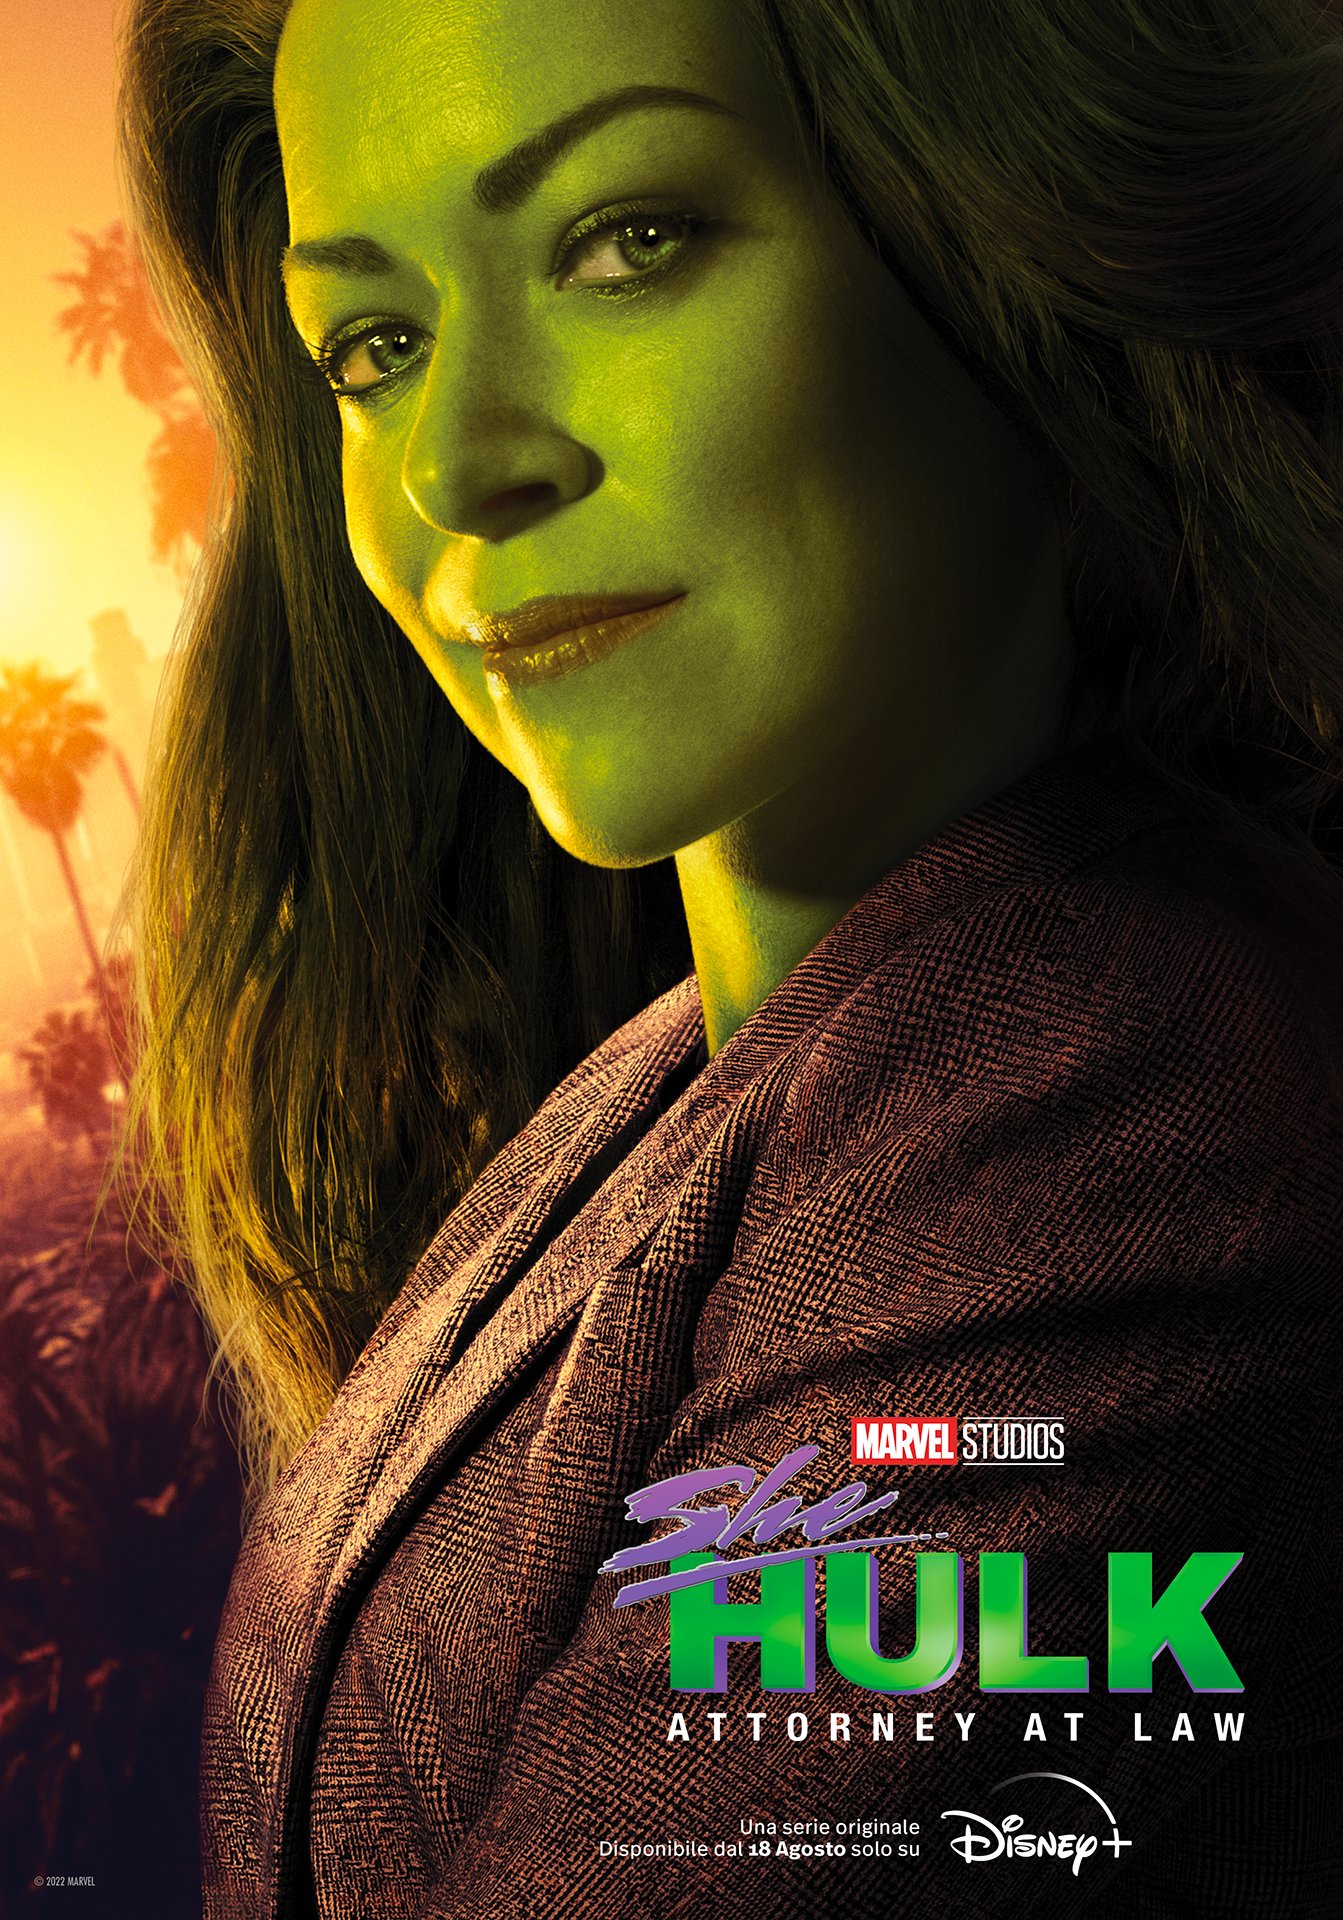 Mulher-Hulk: quando serão lançados os episódios? Veja calendário!